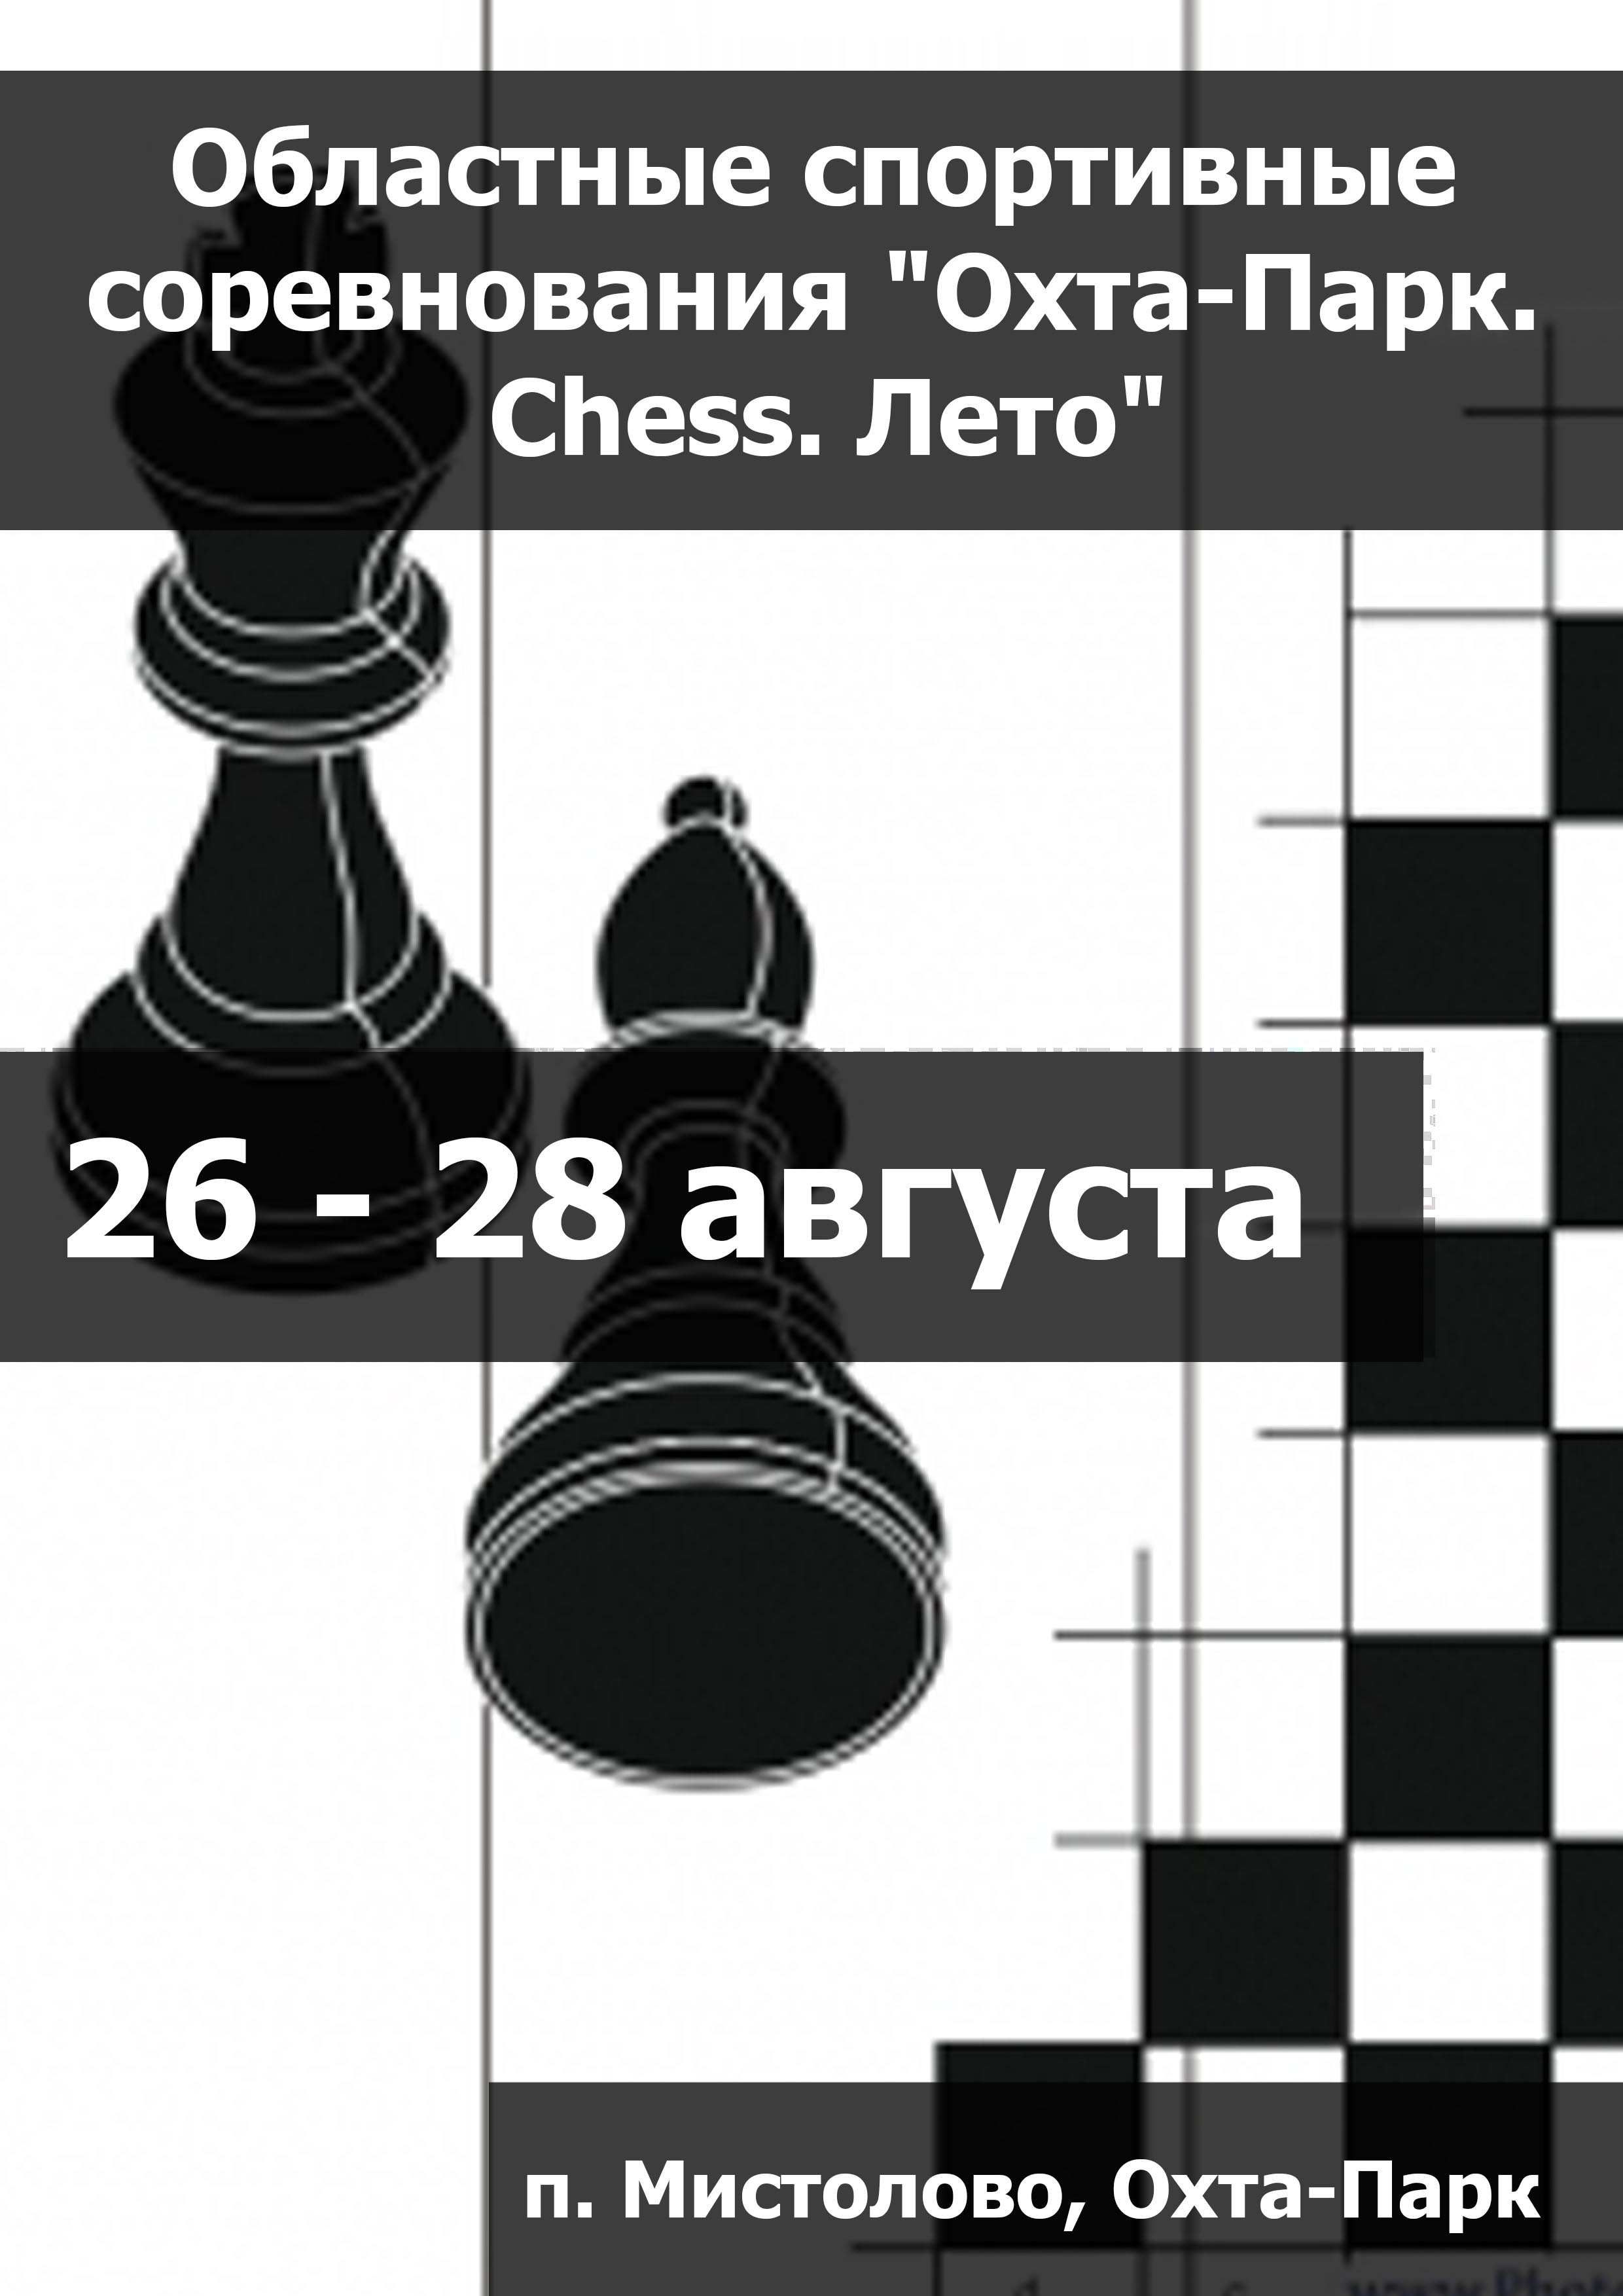 Областные спортивные соревнования "Охта-Парк. Chess. Лето" 26  agosto
 2023  anno
 